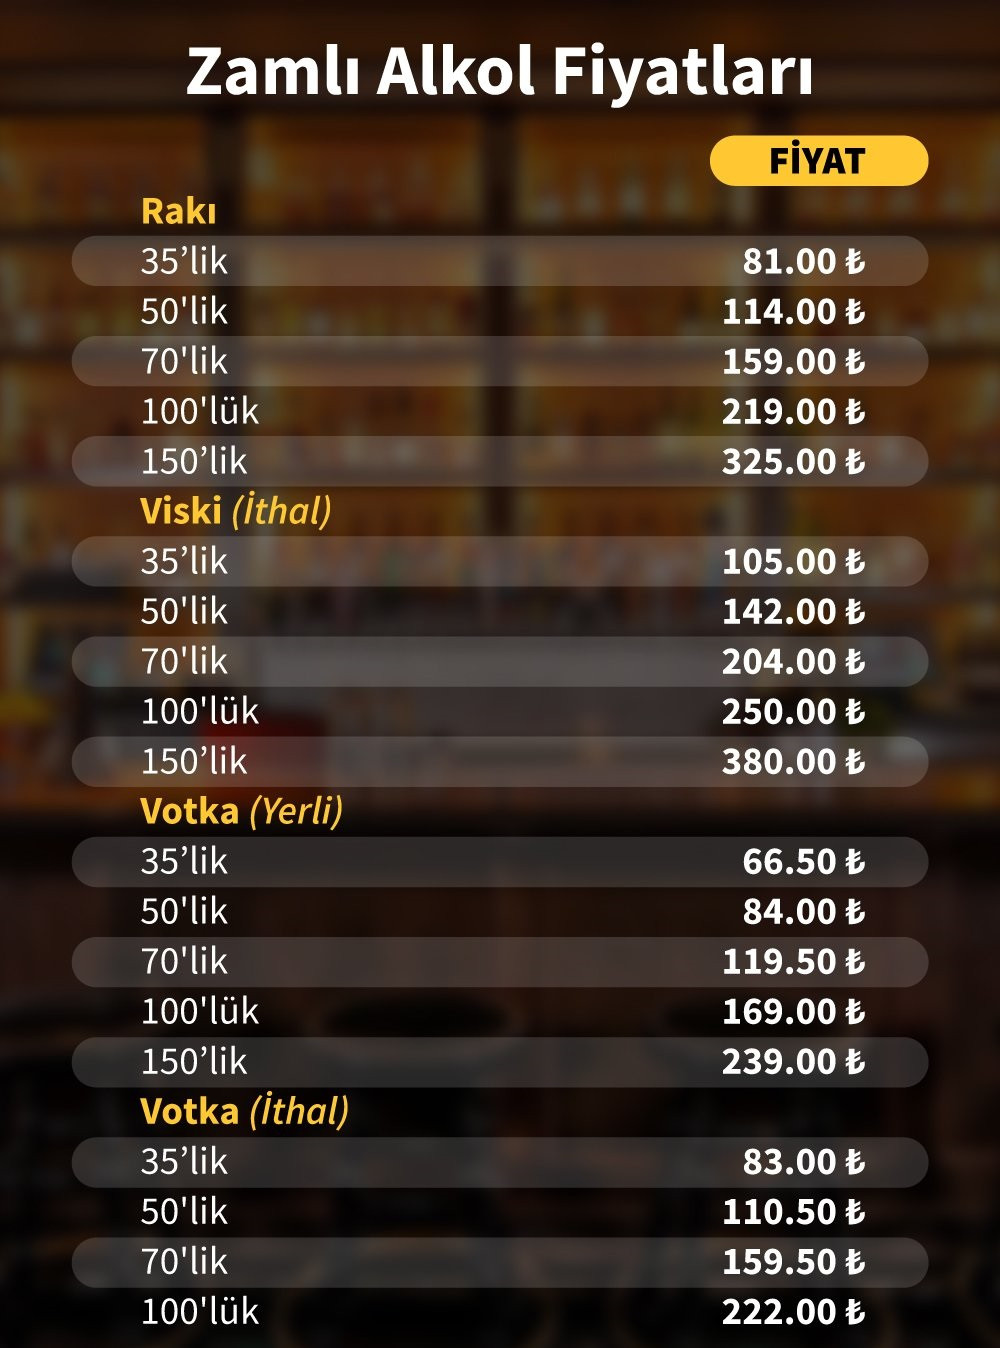 Alkollü içki fiyatlarına büyük zam! İşte zamlı alkol fiyatları - Resim: 1